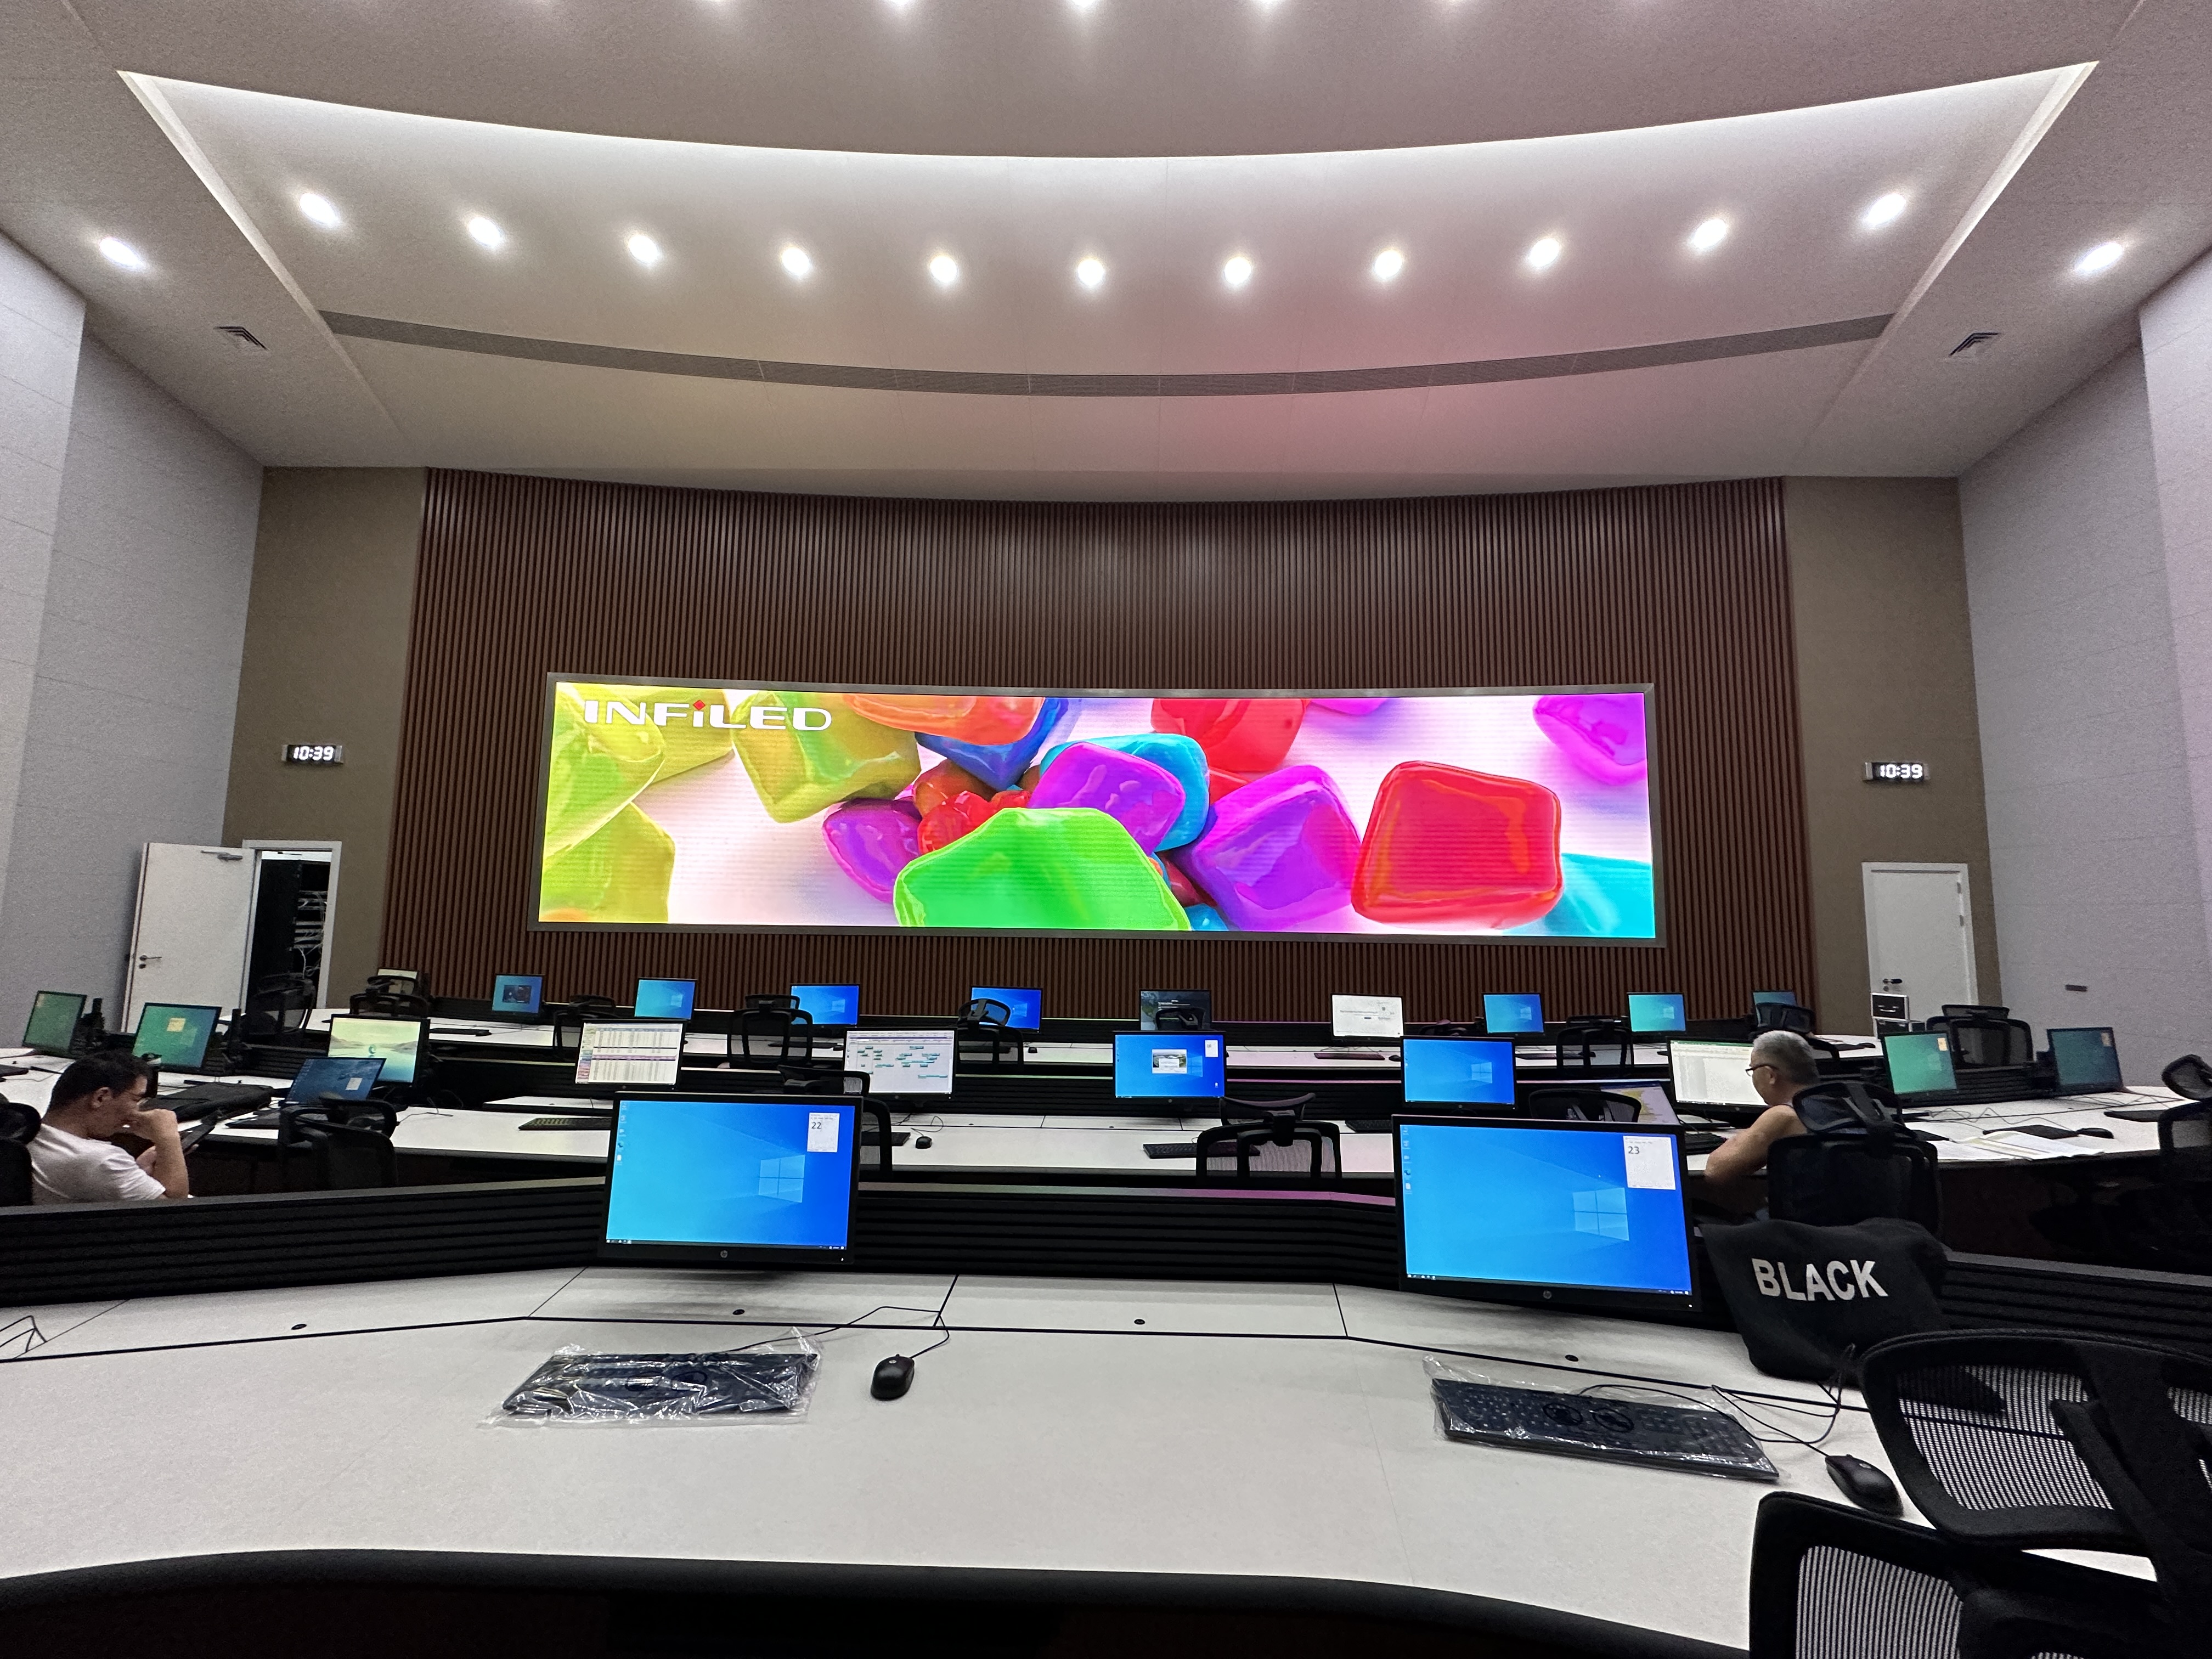 视爵光旭安哥拉内图博士国际机场LED显示屏项目AOC机场管理中心